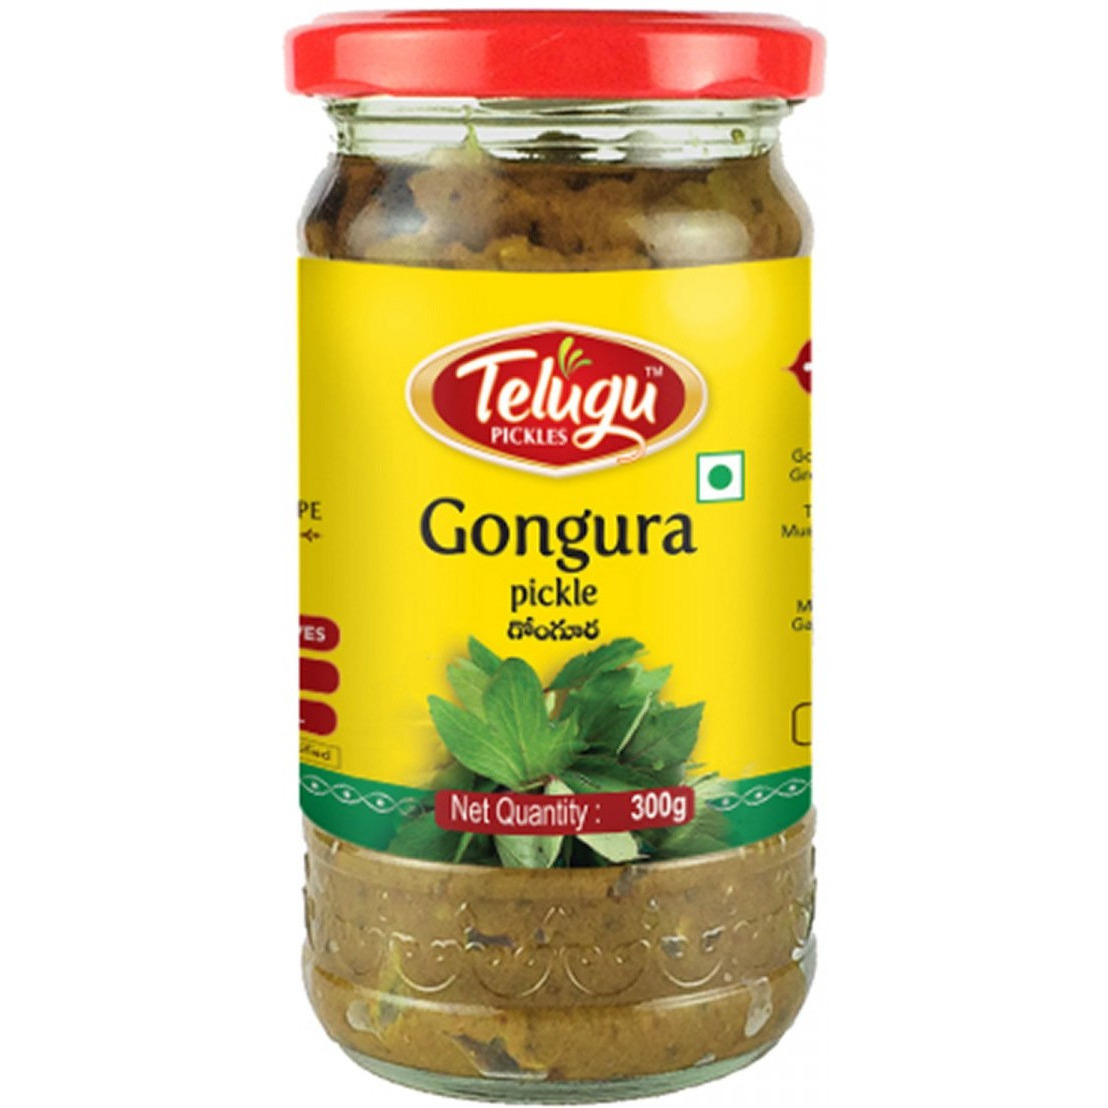 Pack of 4 - Telugu Gongura Pickle Without Garlic - 300 Gm (10.58 Oz)